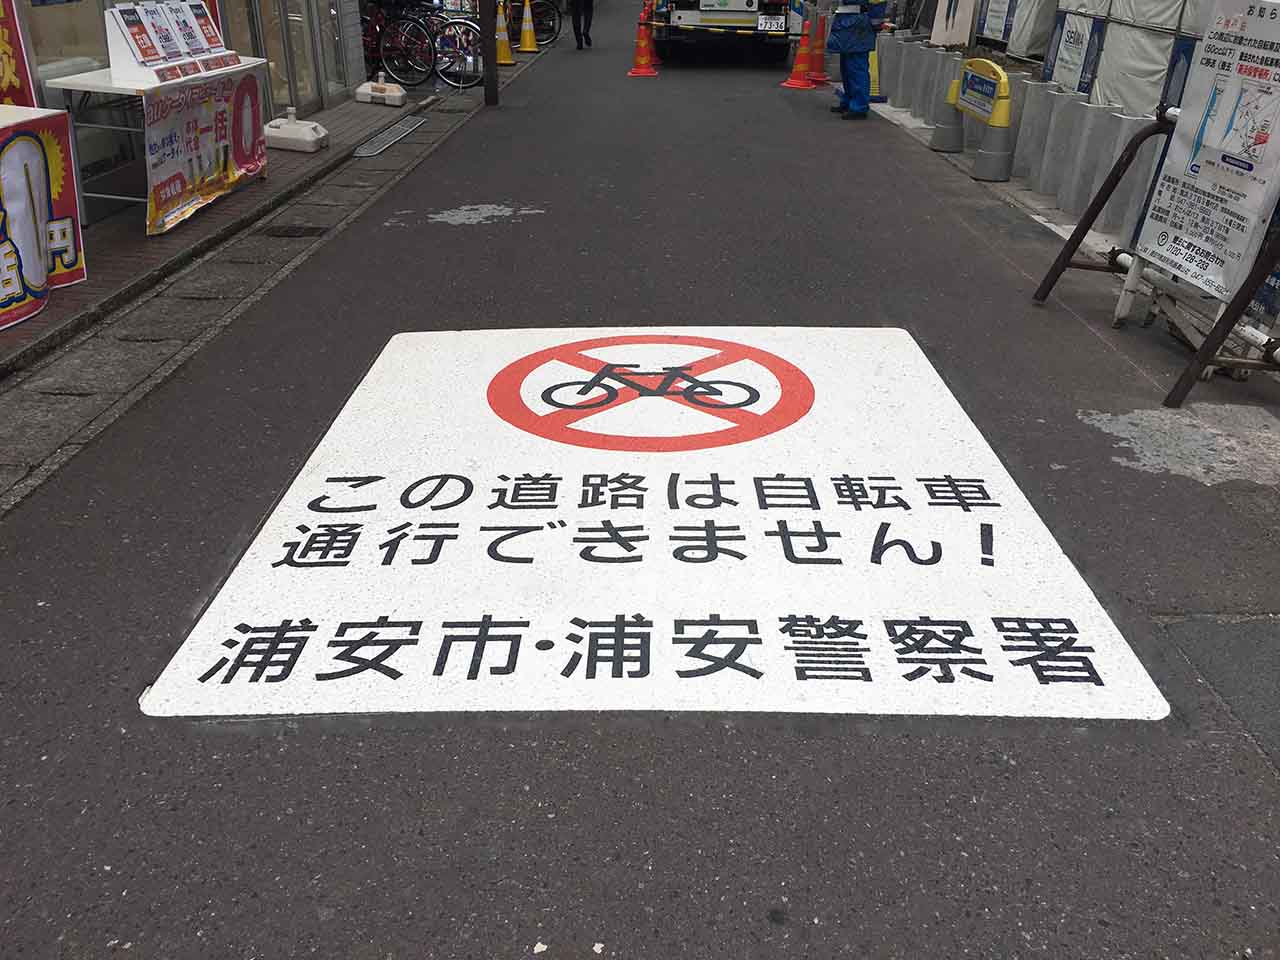 自転車通行規制